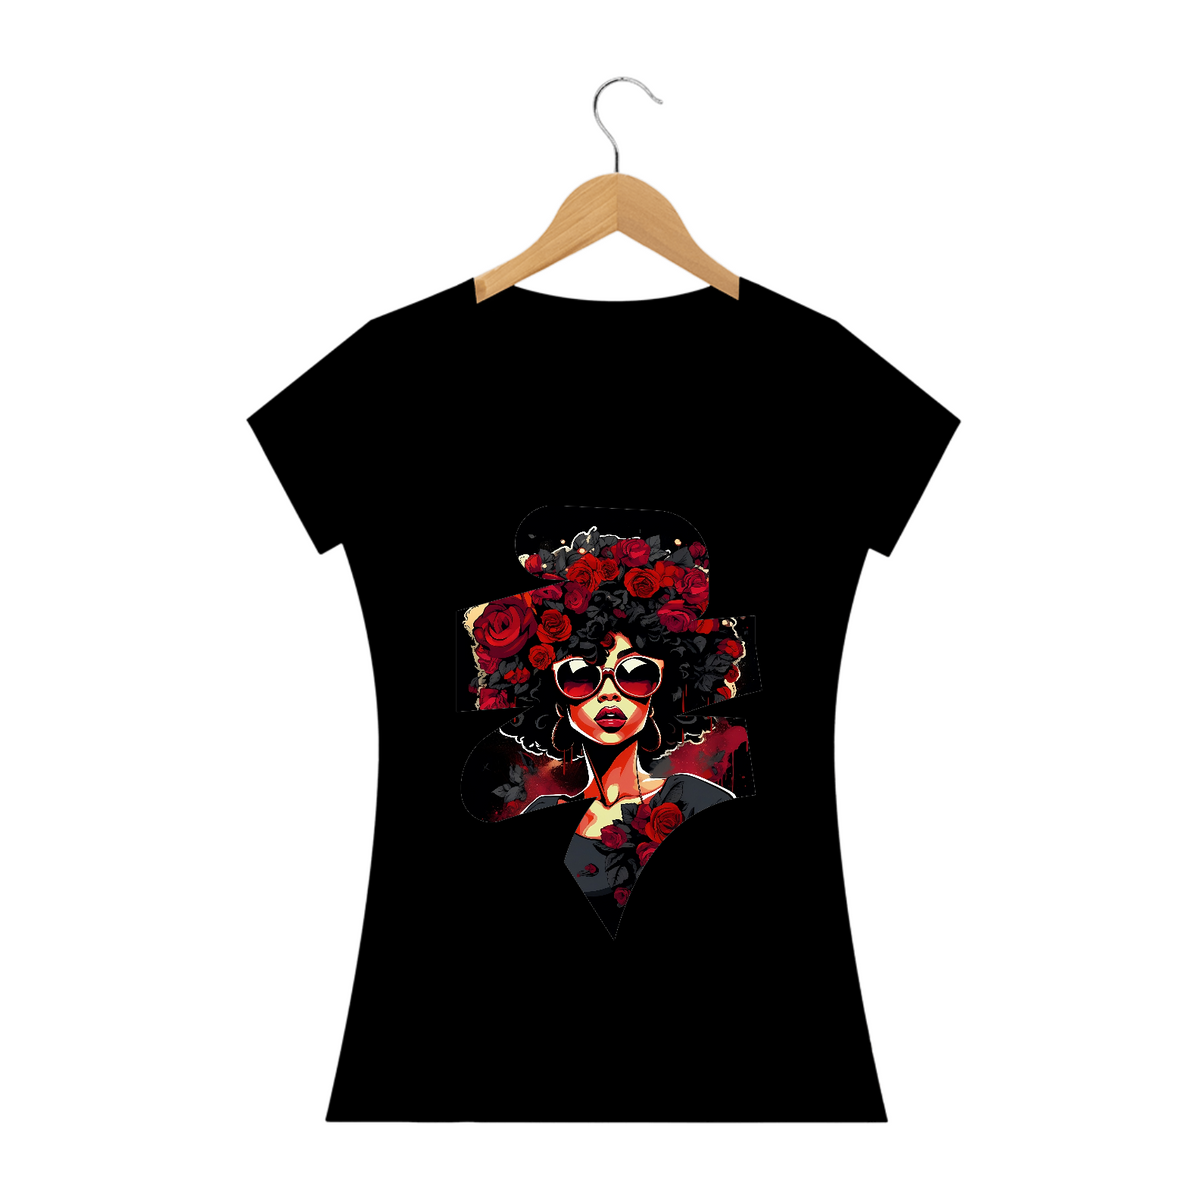 Nome do produto: Camiseta Feminina Mulher Afro com Rosas Sombrias: Uma Fusão de Estilos Artísticos